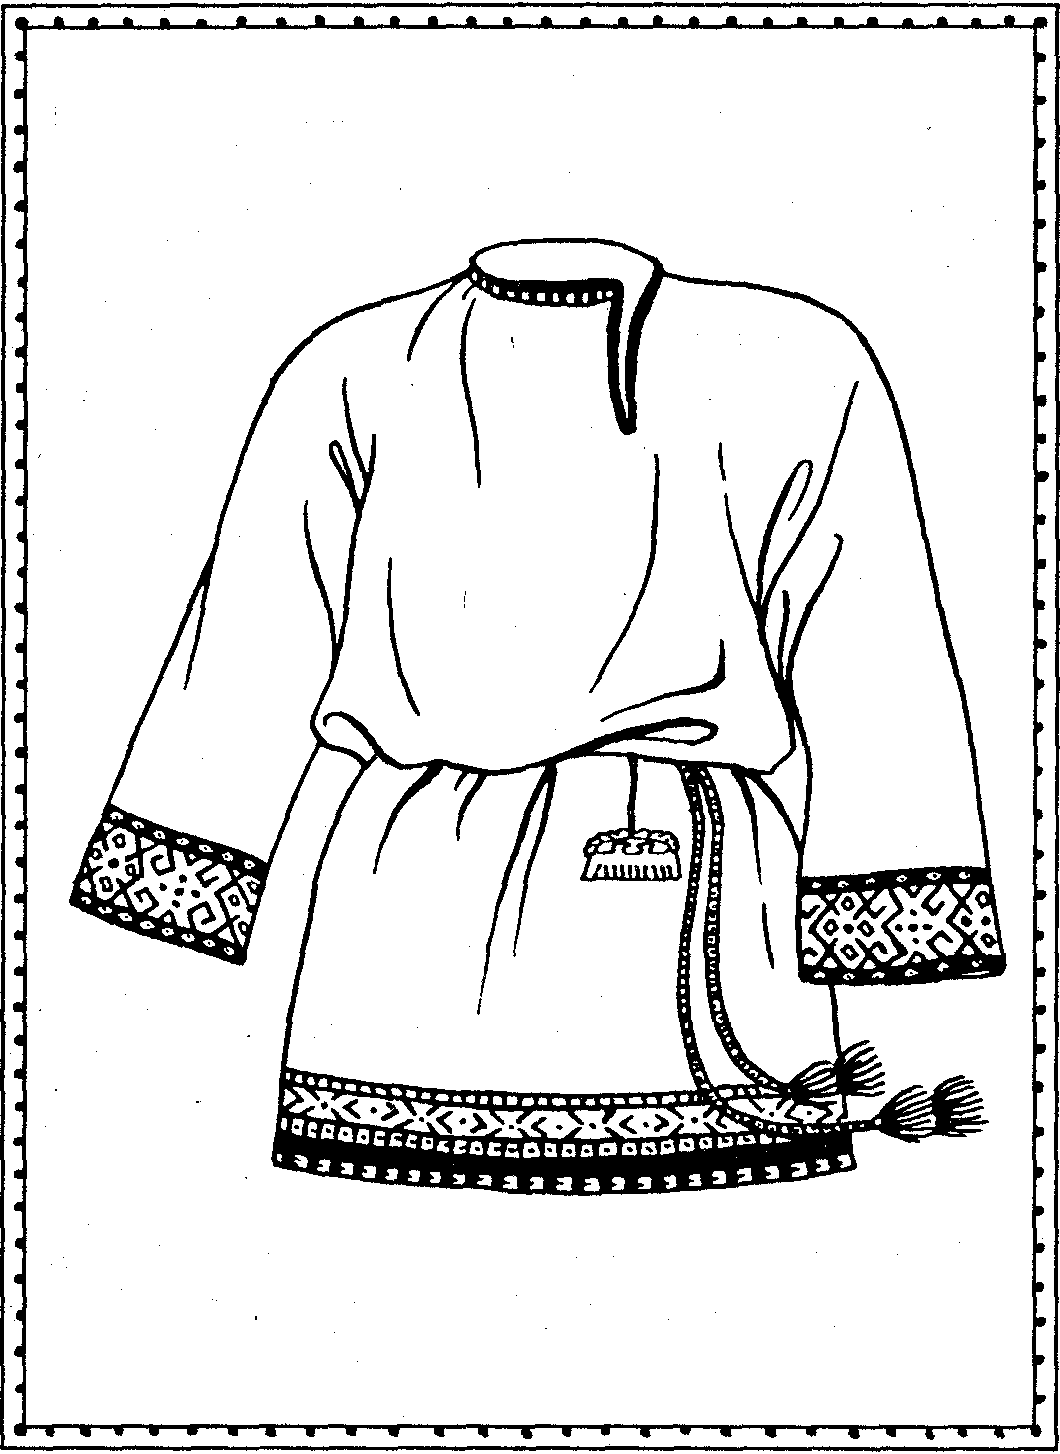 Одежда славян древней Руси рубаха